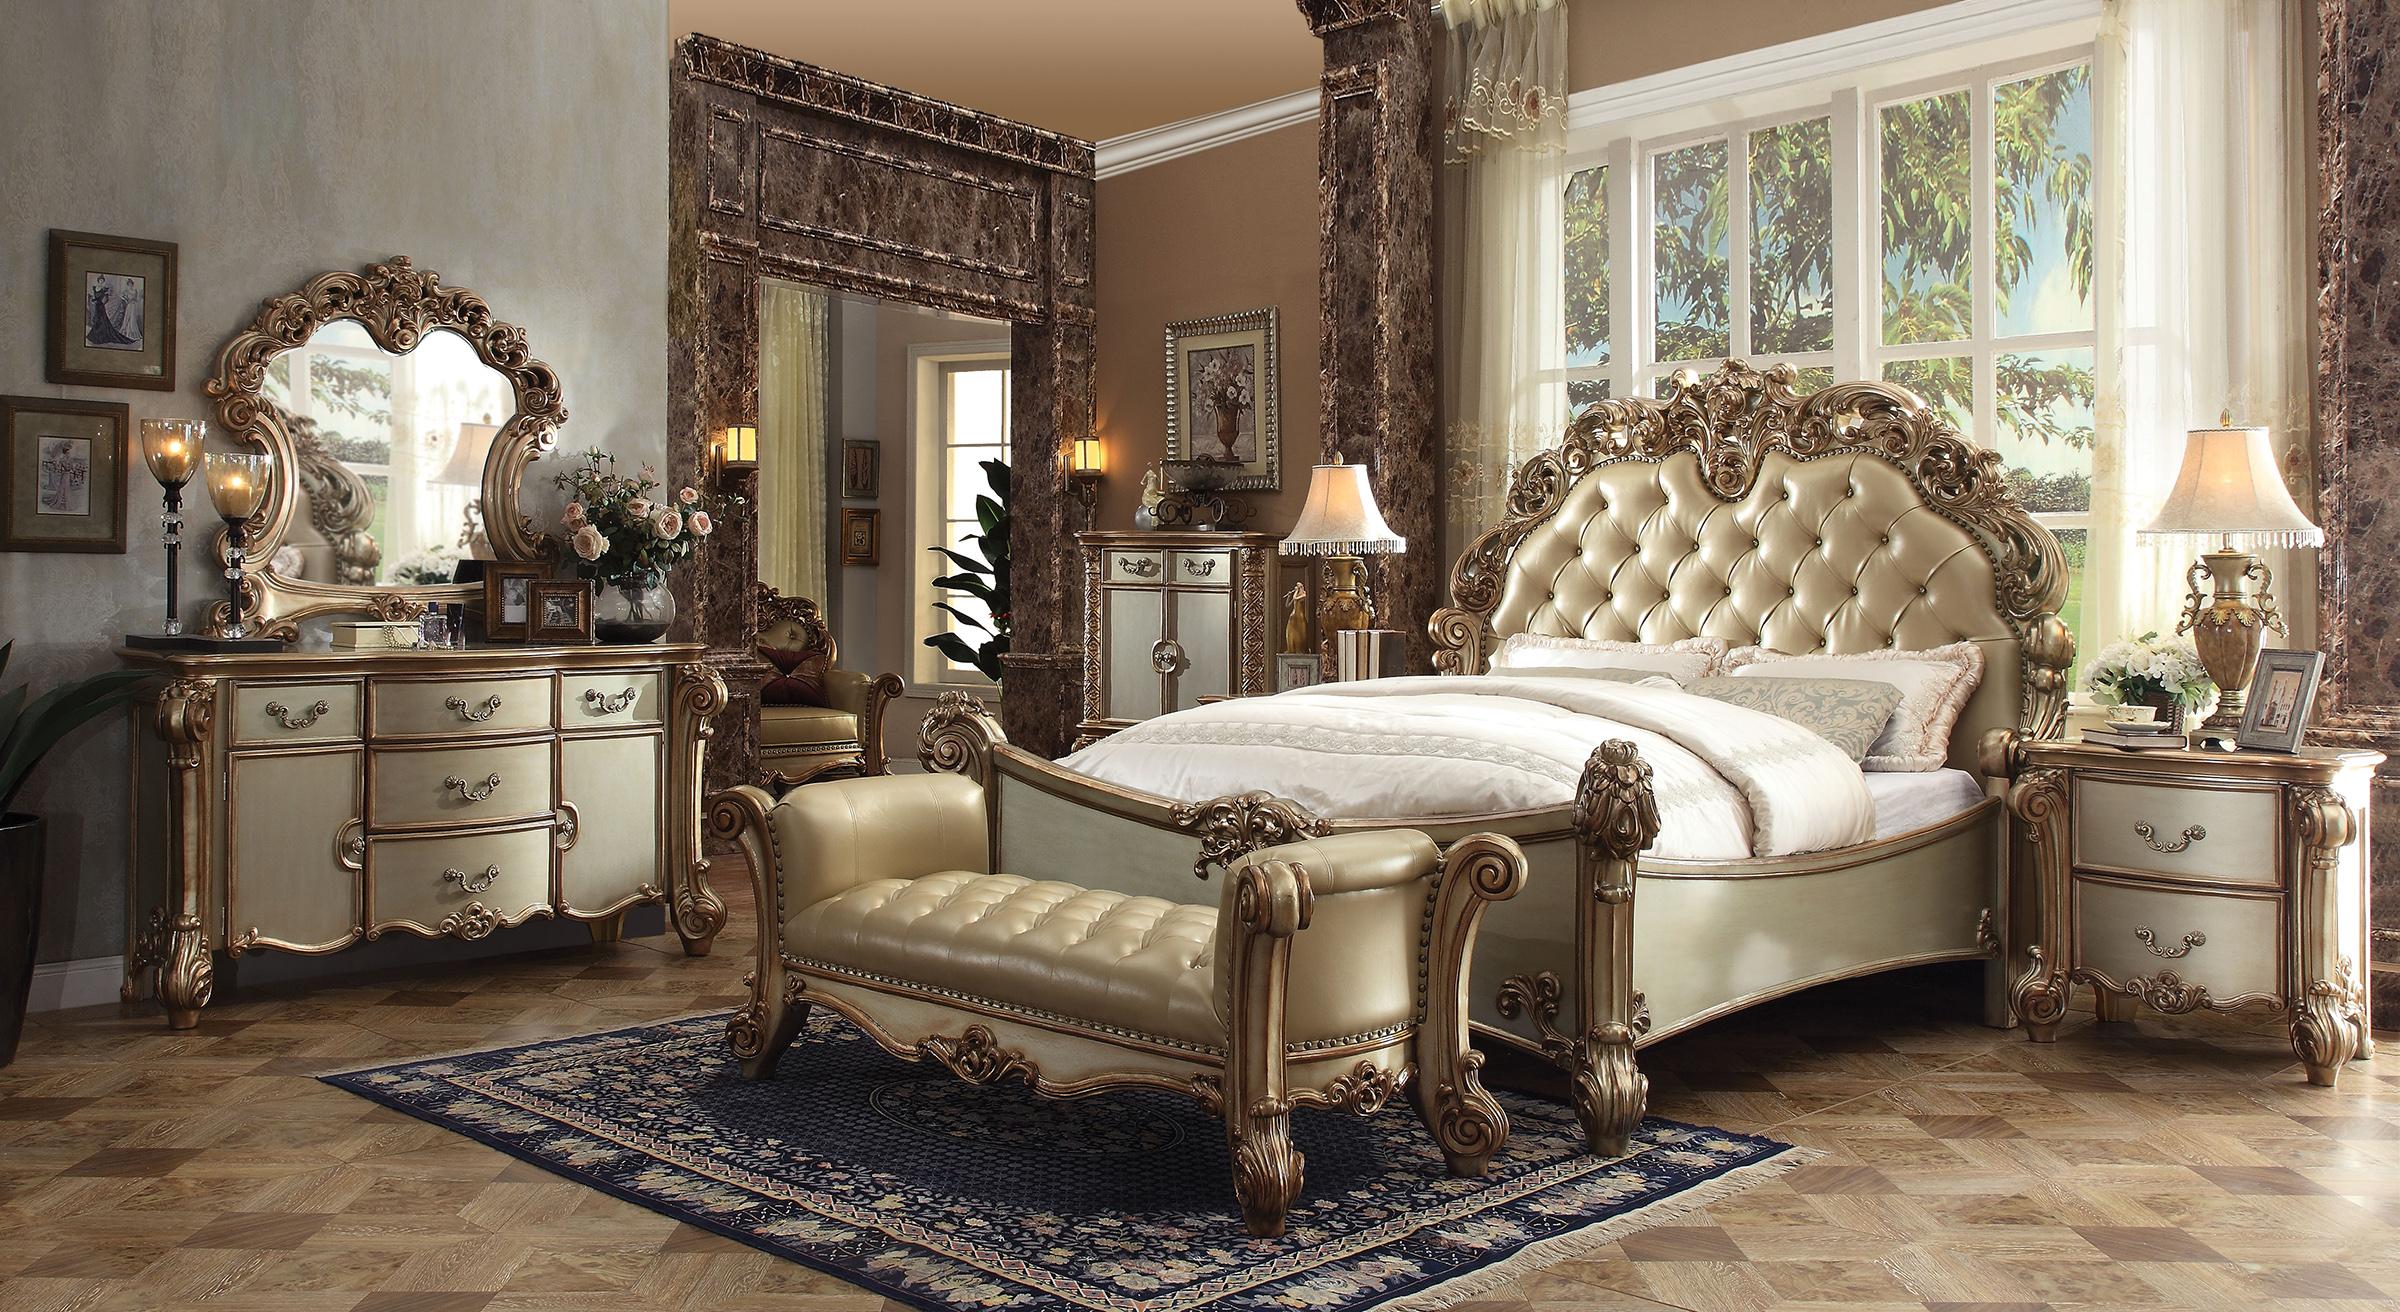 

    
VENDOME-23000Q-Set-3 Bone Gold Patina Queen Bedroom Set 3Pcs Vendome 23000Q Acme Classic Victorian
